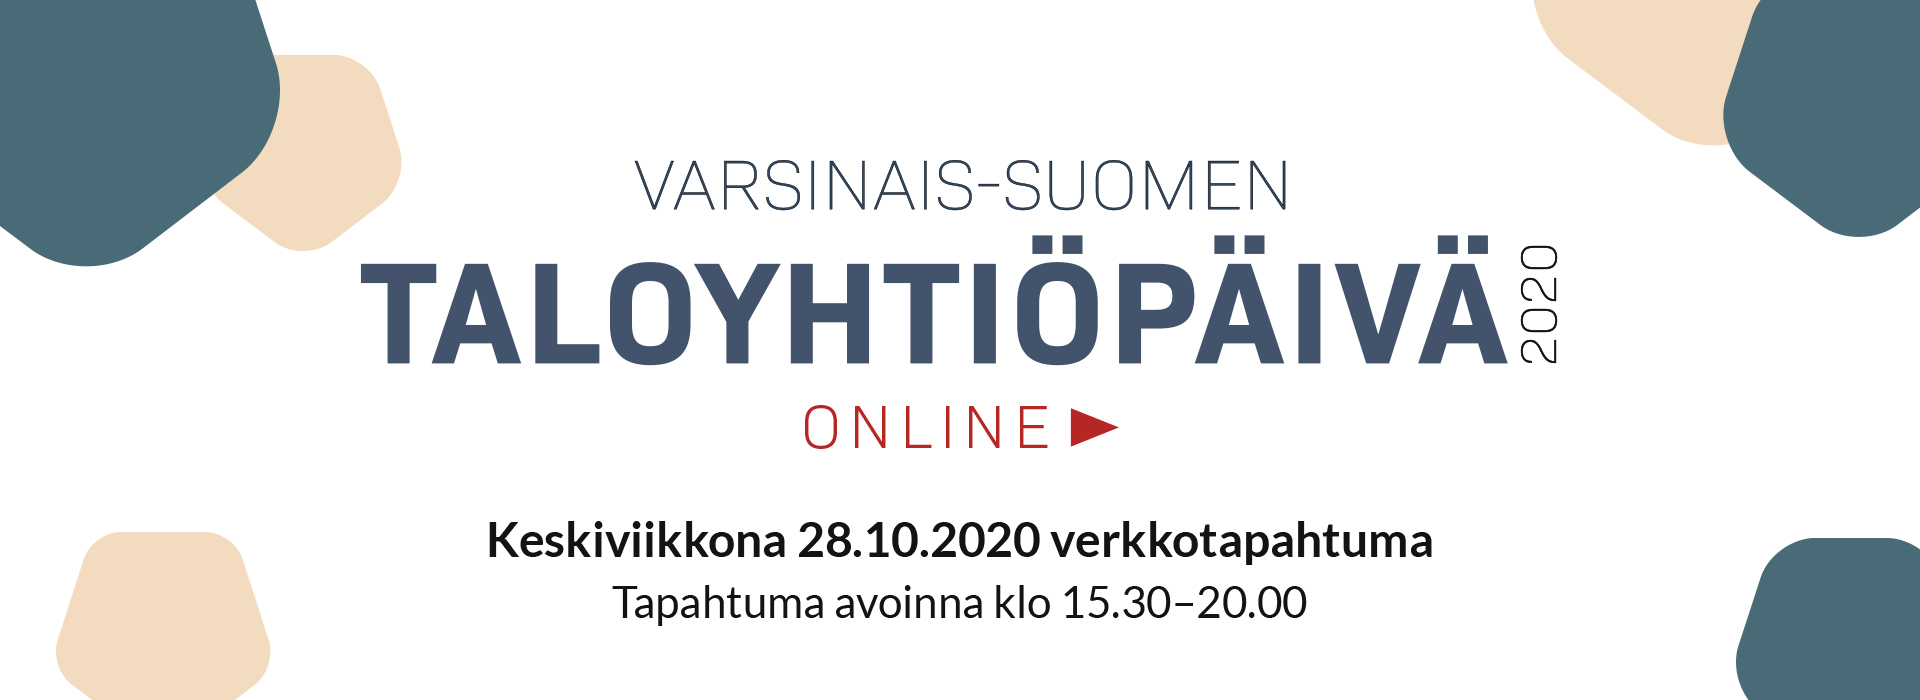 Taloyhtiöasioista monipuolista oppia Varsinais-Suomen Taloyhtiöpäivä verkkotapahtumassa 28.10.2020